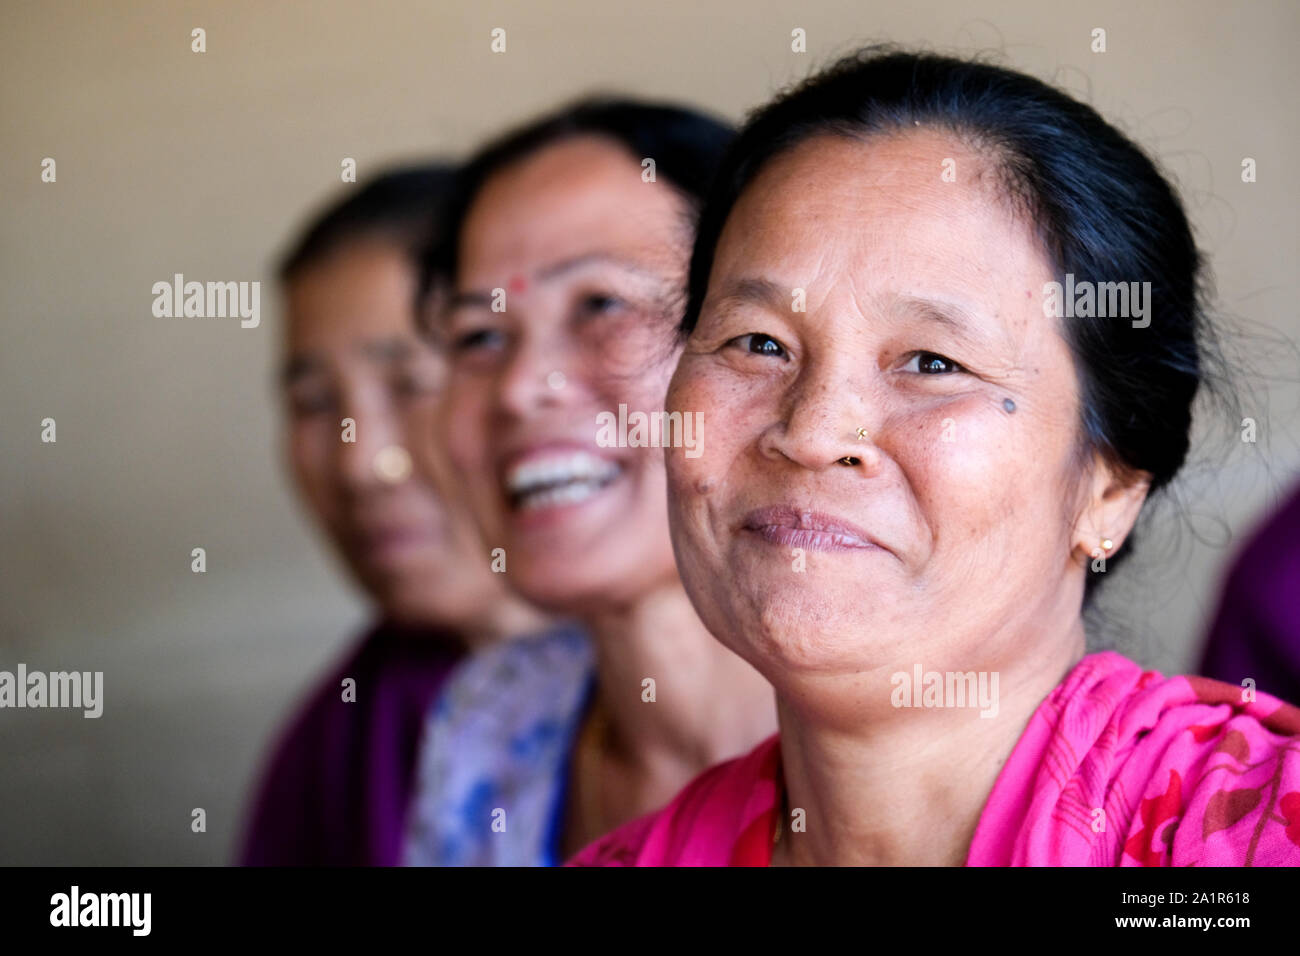 Les femmes ont formé un groupe d'entraide d'être économiquement plus indépendants. Bagbari Village, Etat de Tripura, nord-est de l'Inde Banque D'Images